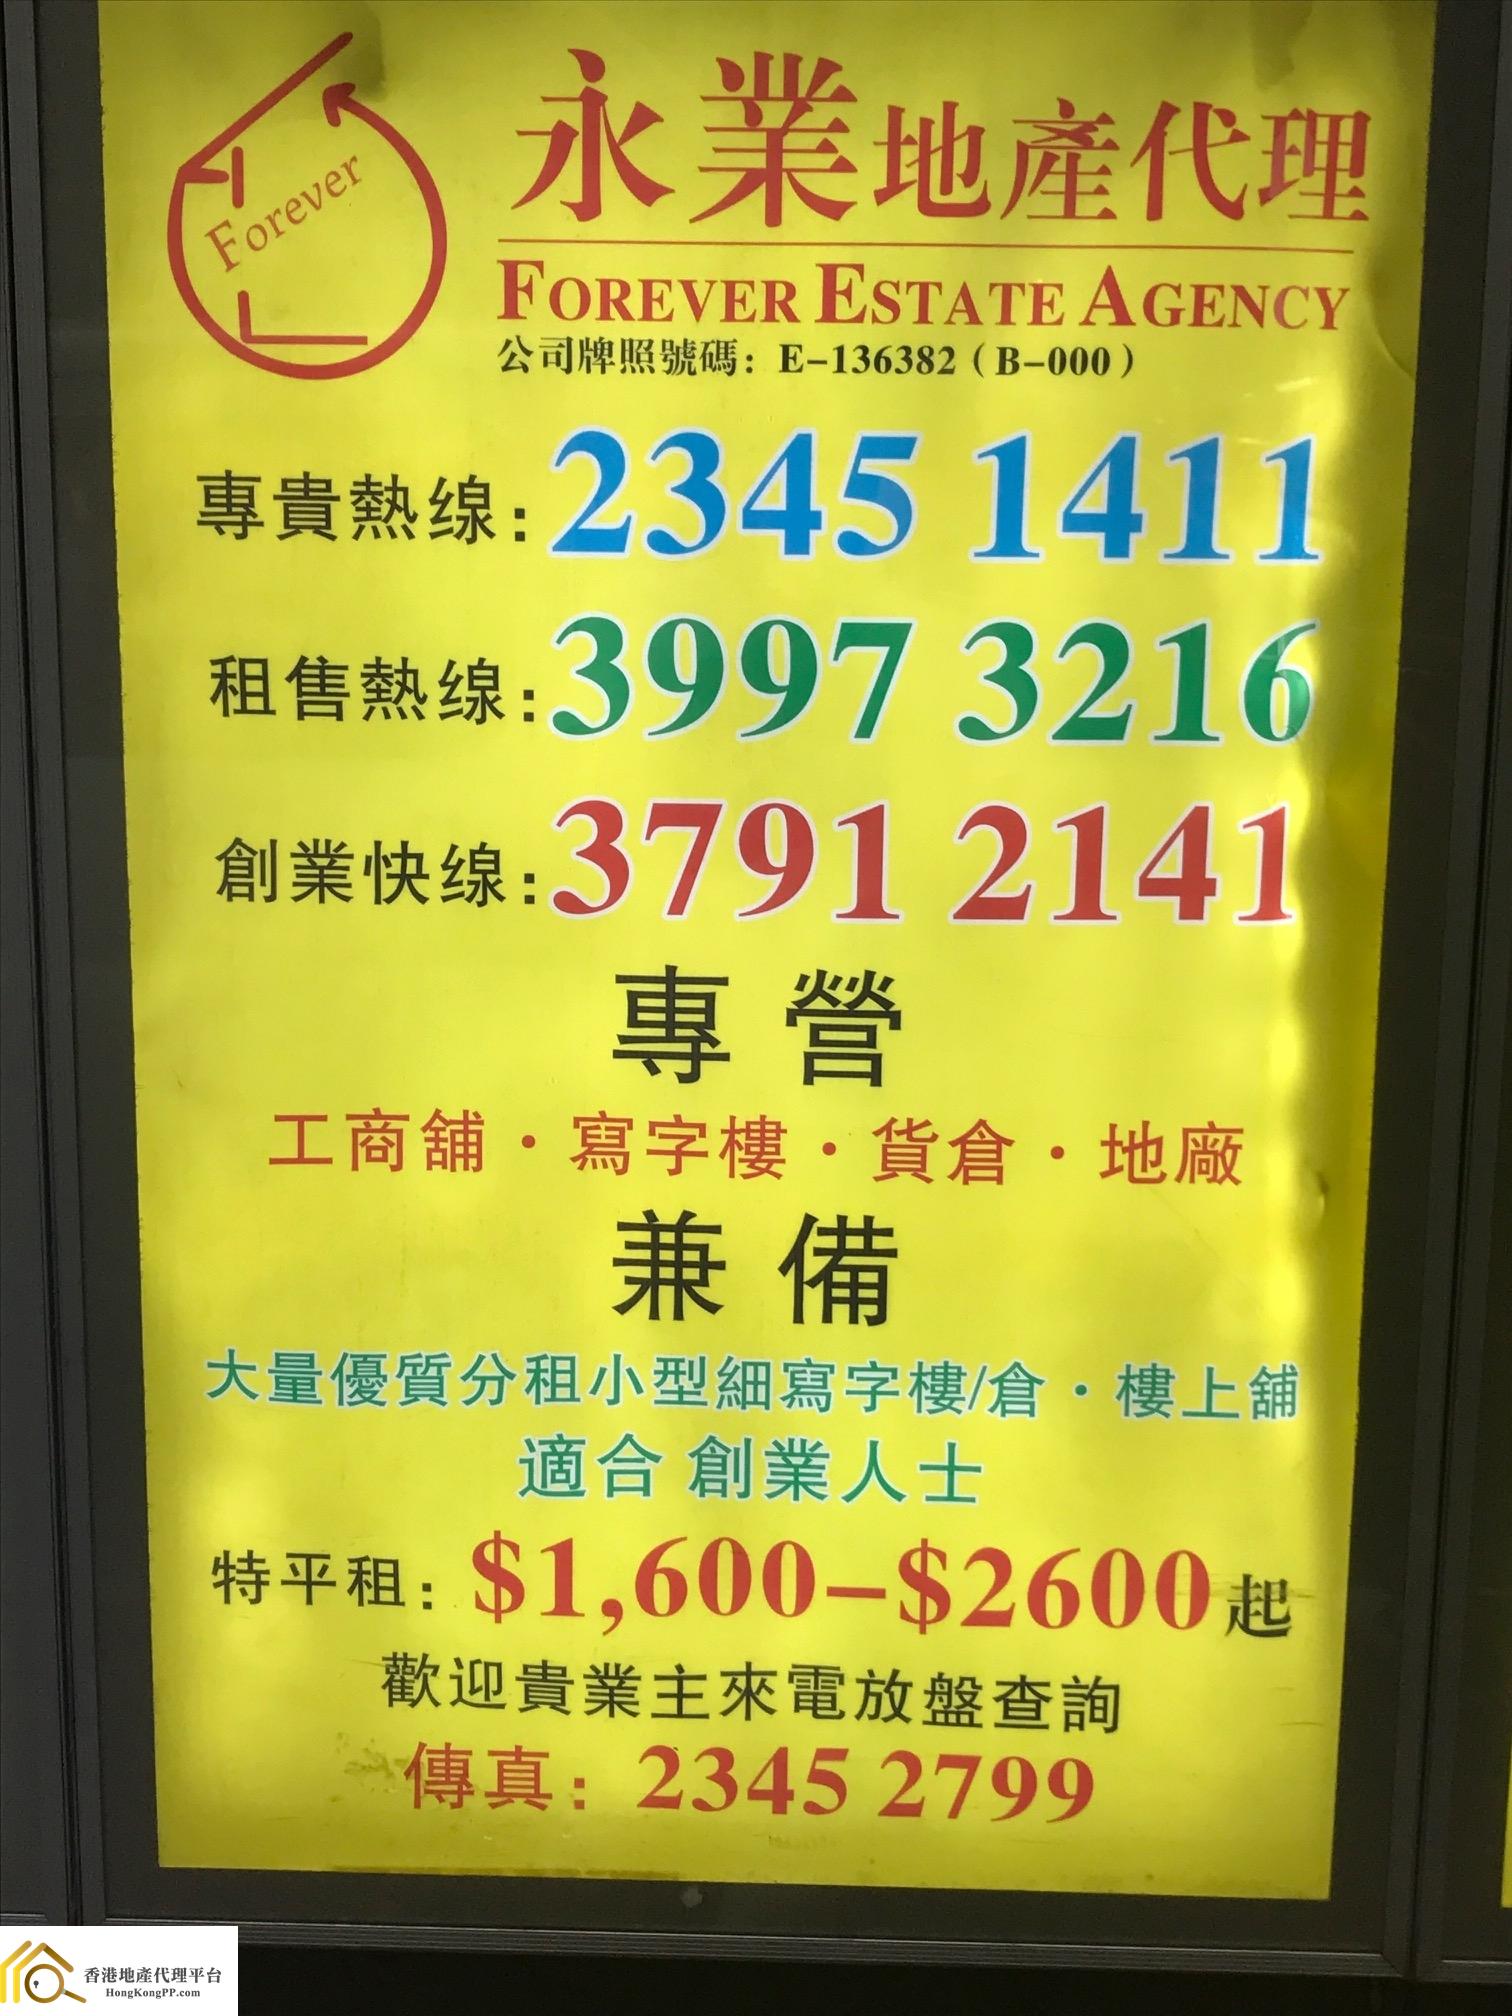 工業大廈地產代理: 永業地產代理 Forever Estate Agency 